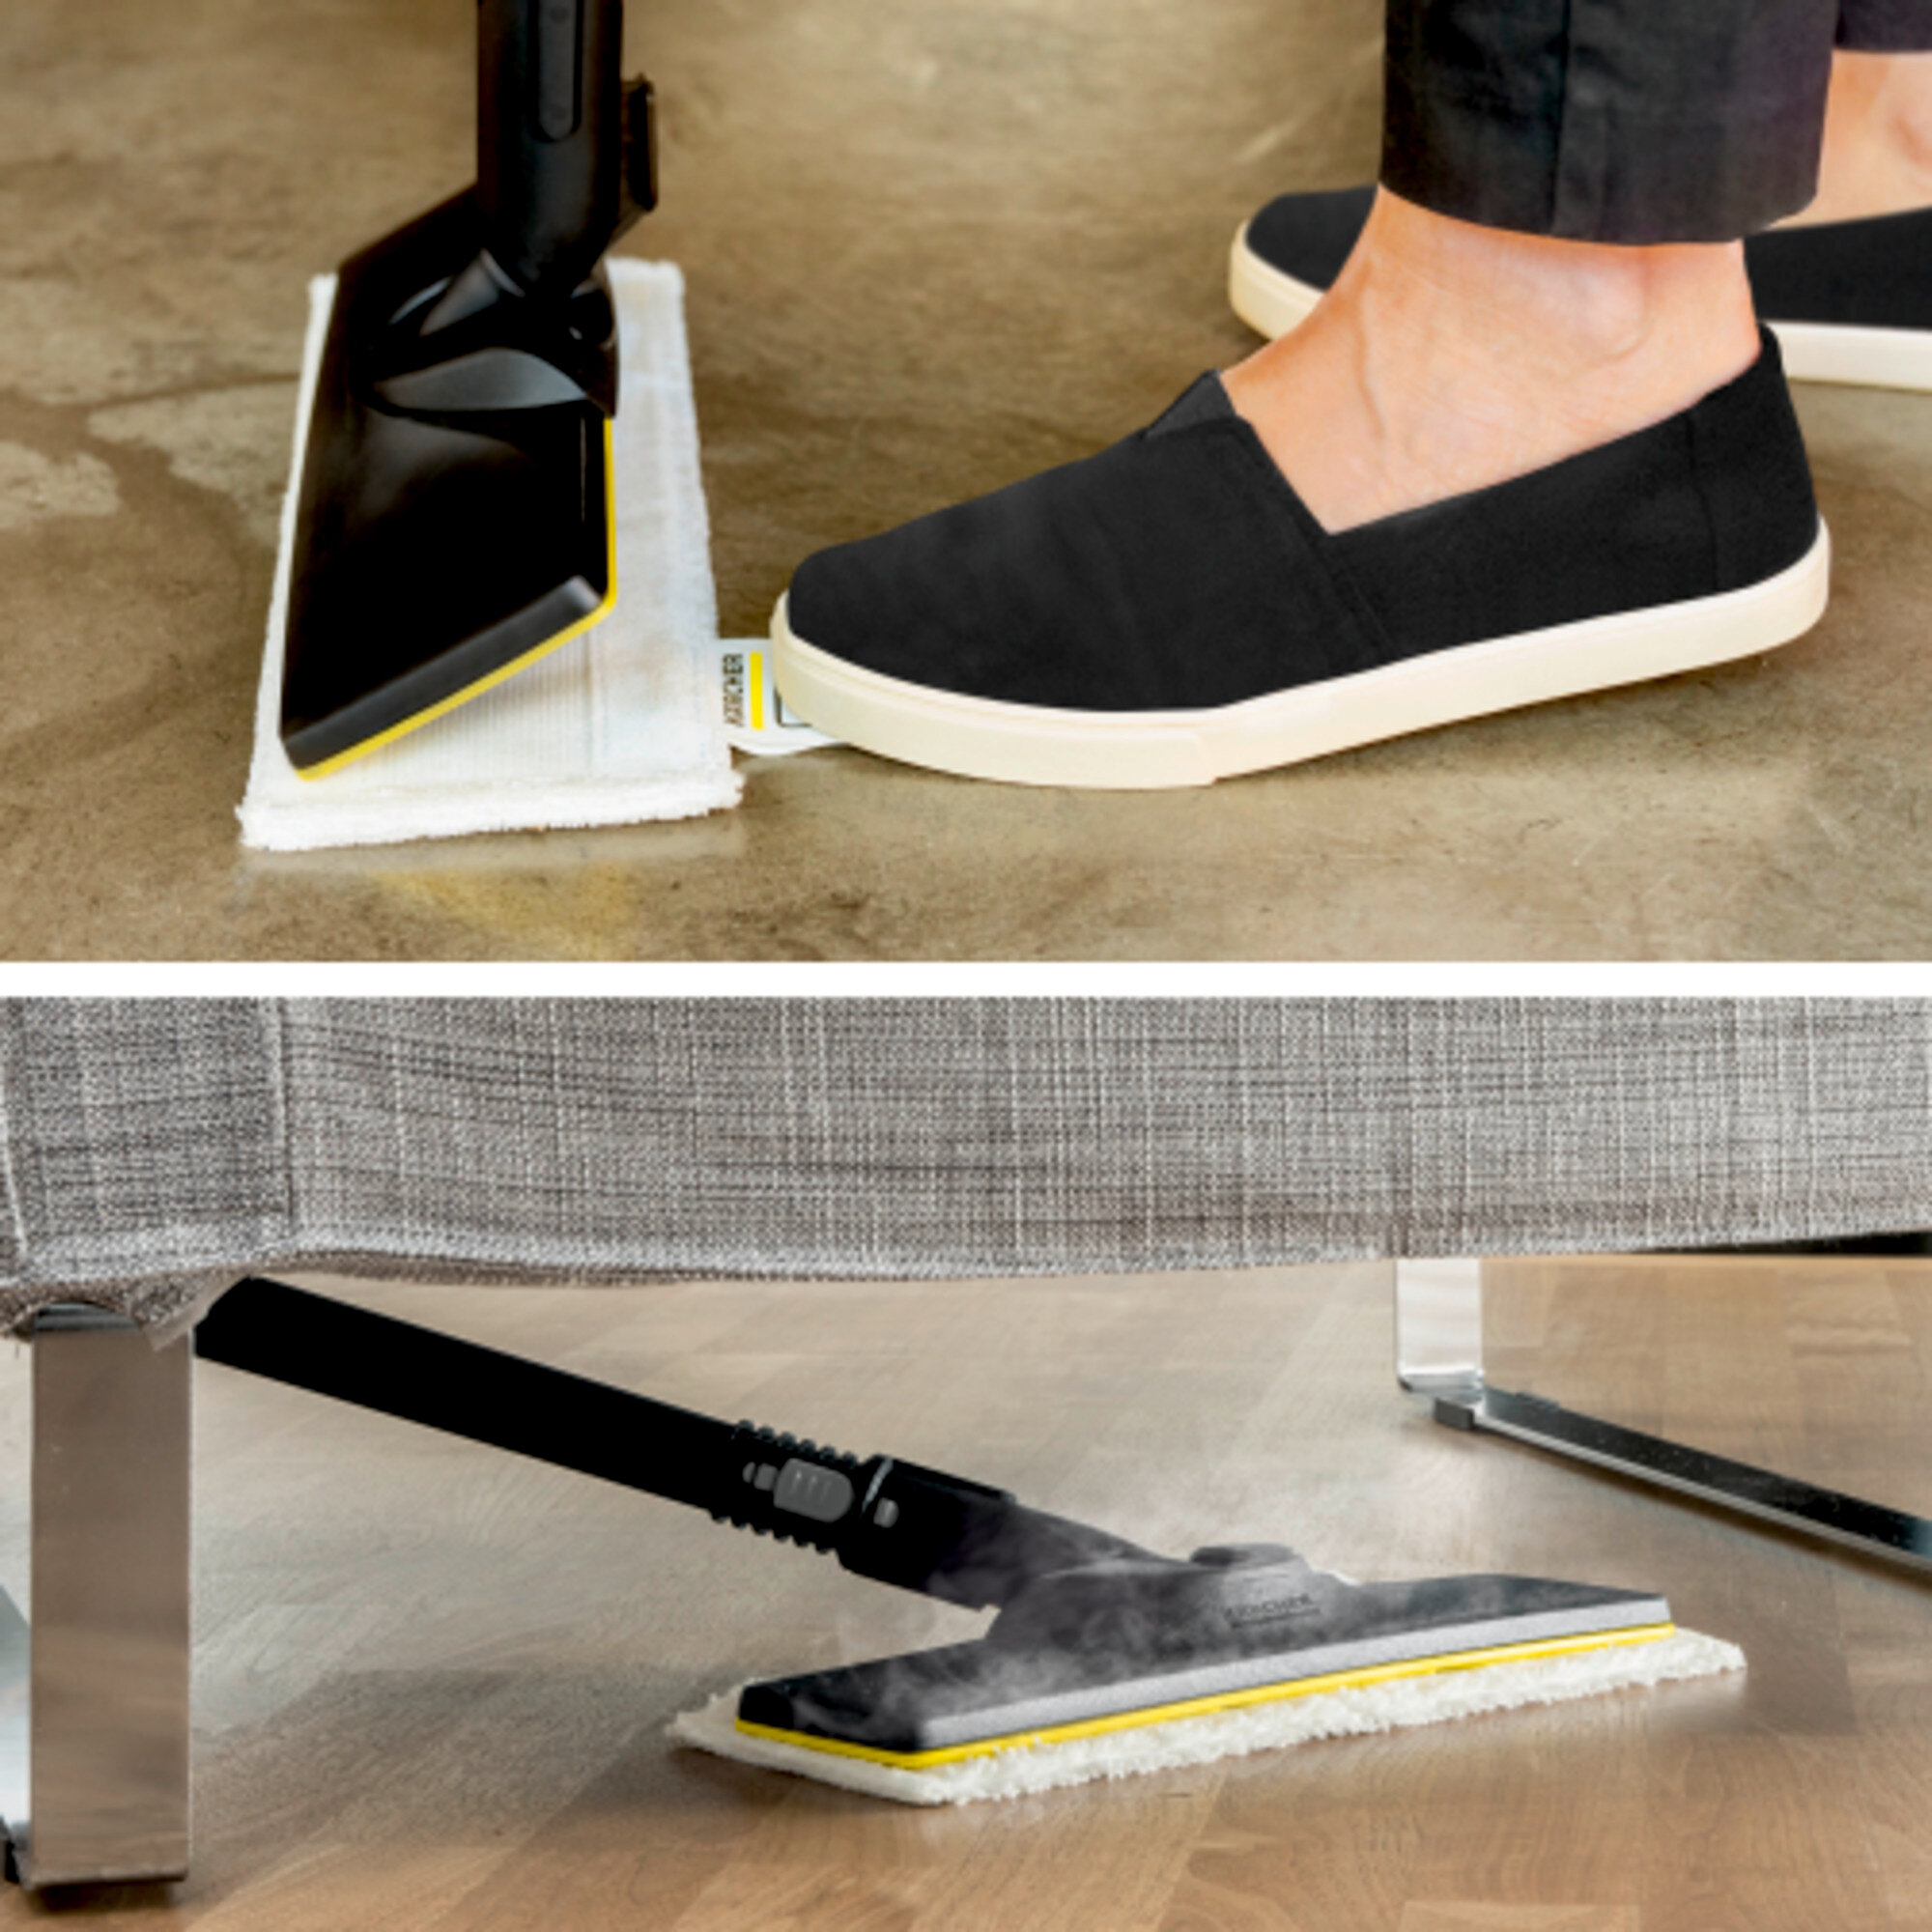 Garo valytuvas SC 3 EasyFix Plus: Grindų valymo rinkinys EasyFix su lanksčia jungtimi ant grindų antgalio ir lipnia fiksacijos sistema grindų šluostei.